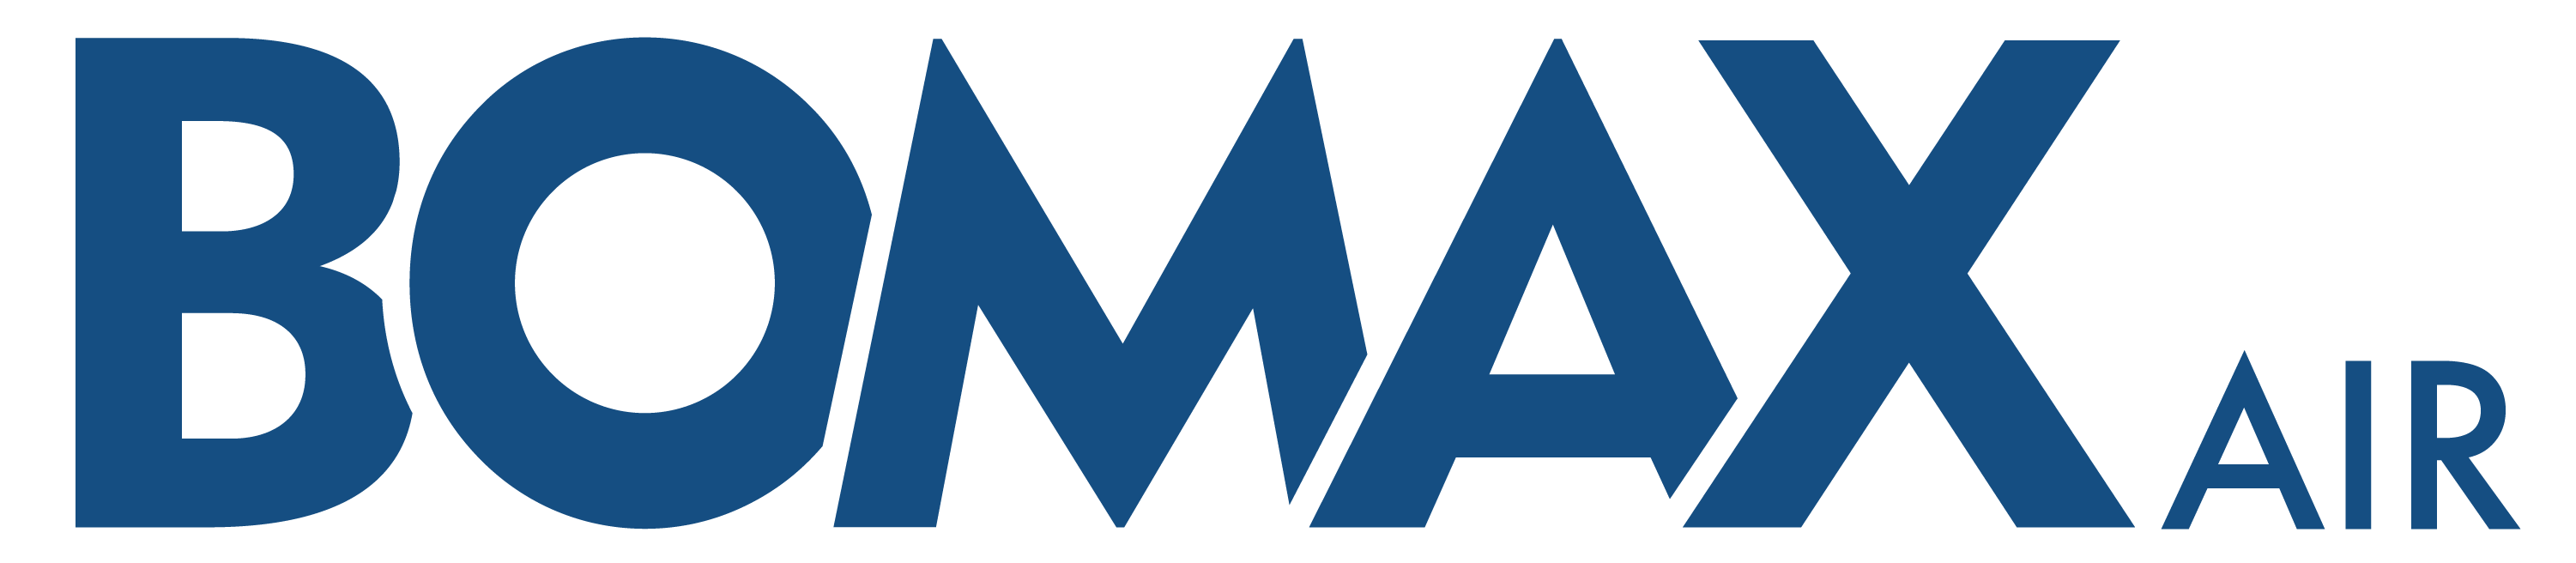 Bomax Luftreiniger Logo